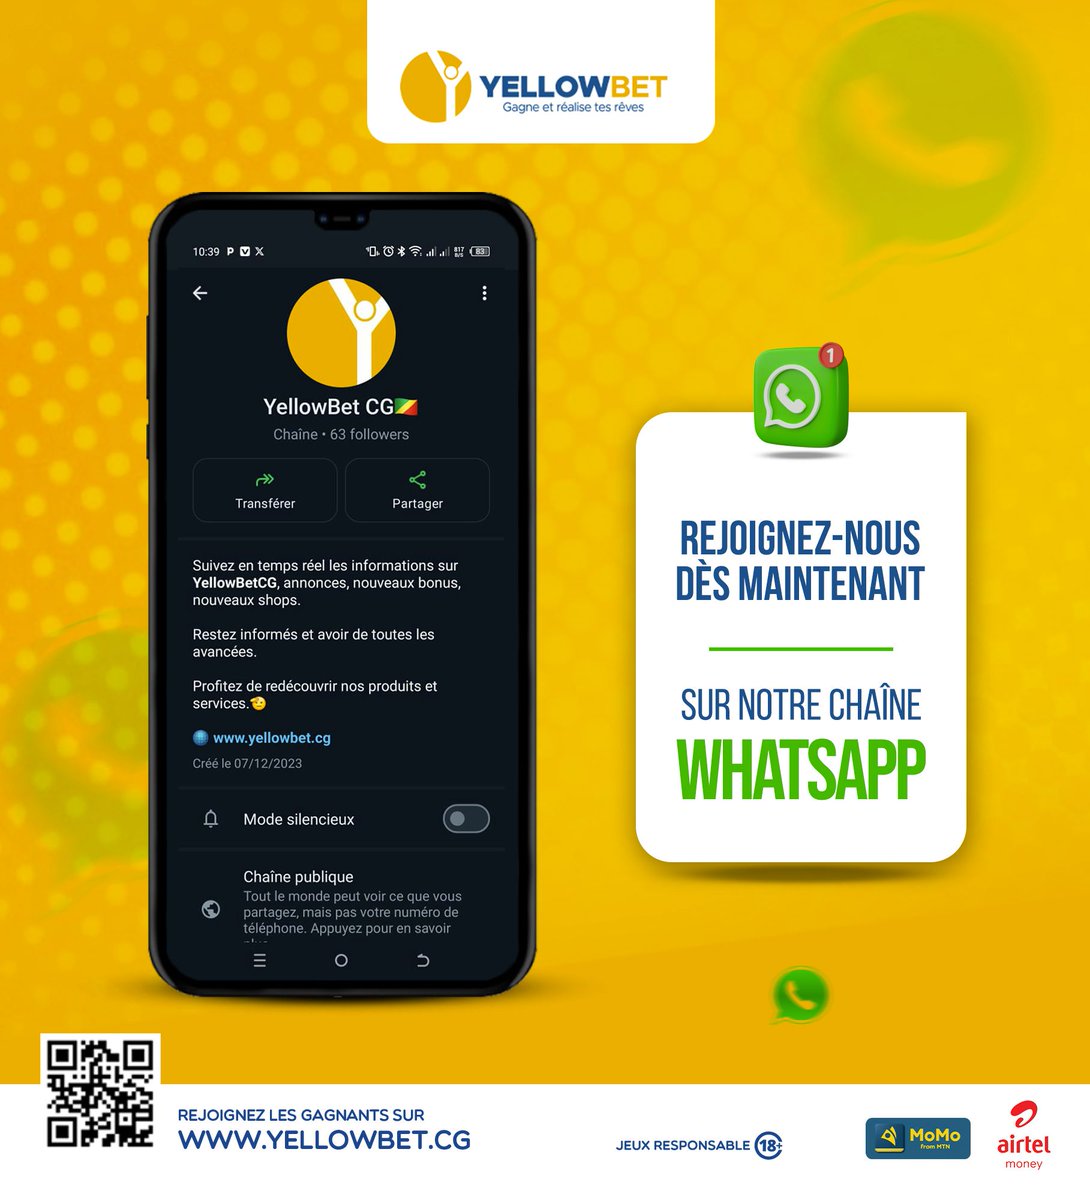 😁😁😁 Rejoignez #Yellowbet_Congo sur WhatsApp et ne manquez aucune info sur nos bonus exclusifs et nos dernières promotions ! 📲 Cliquez sur le lien 👉 buff.ly/3RcLXqk pour rejoindre Yellowbet Congo sur WhatsApp 🥳 #YellowBetCG #NeManquezPas #WhatsApp